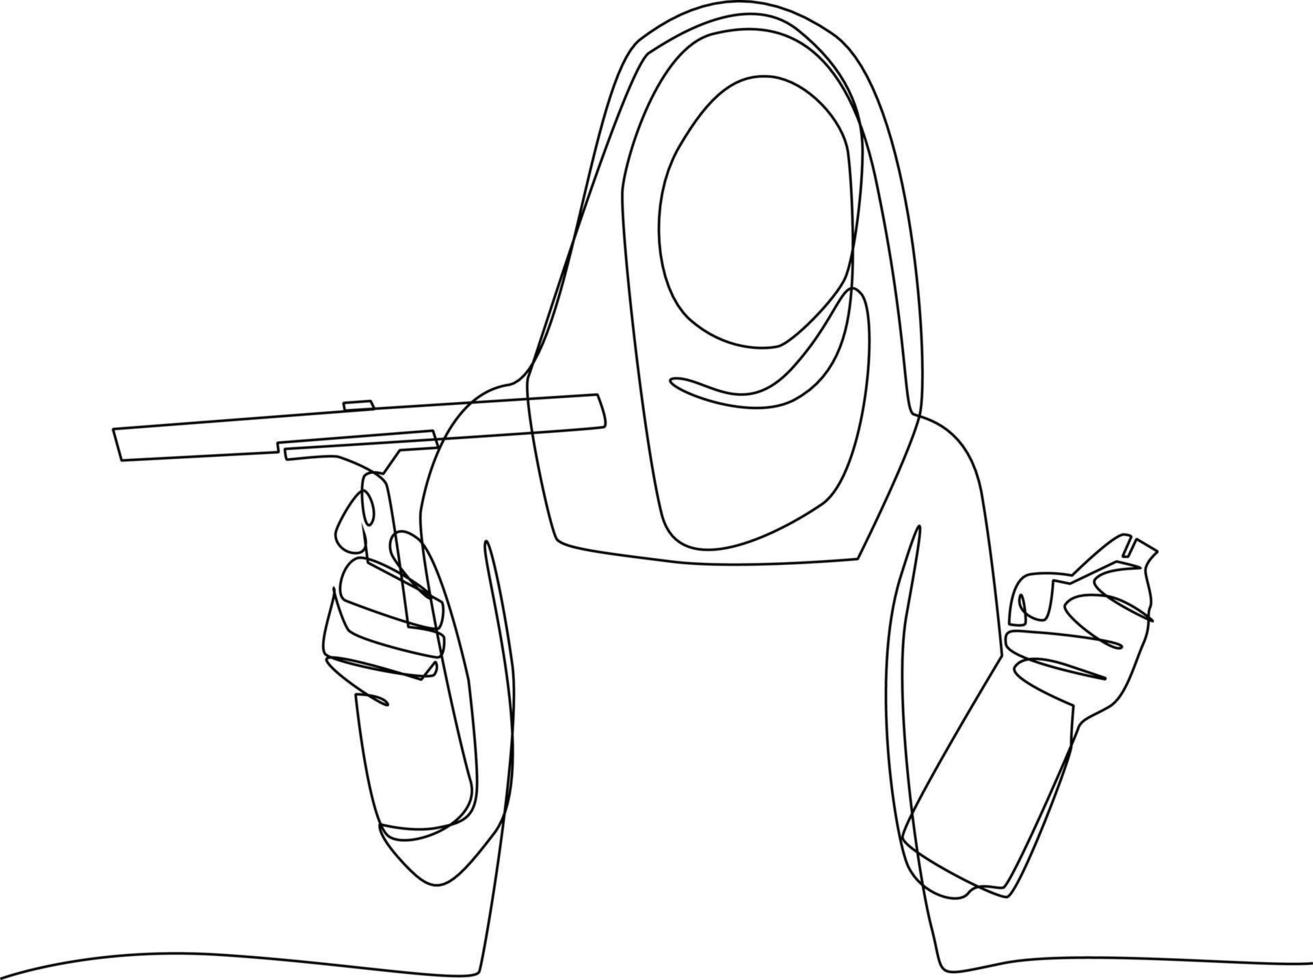 kontinuierlich einer Linie Zeichnung glücklich Muslim Frau Reinigung im Haus. Konzept von Zuhause Gesundheit Pflege Aktivitäten. Single Linie zeichnen Design Vektor Grafik Illustration.